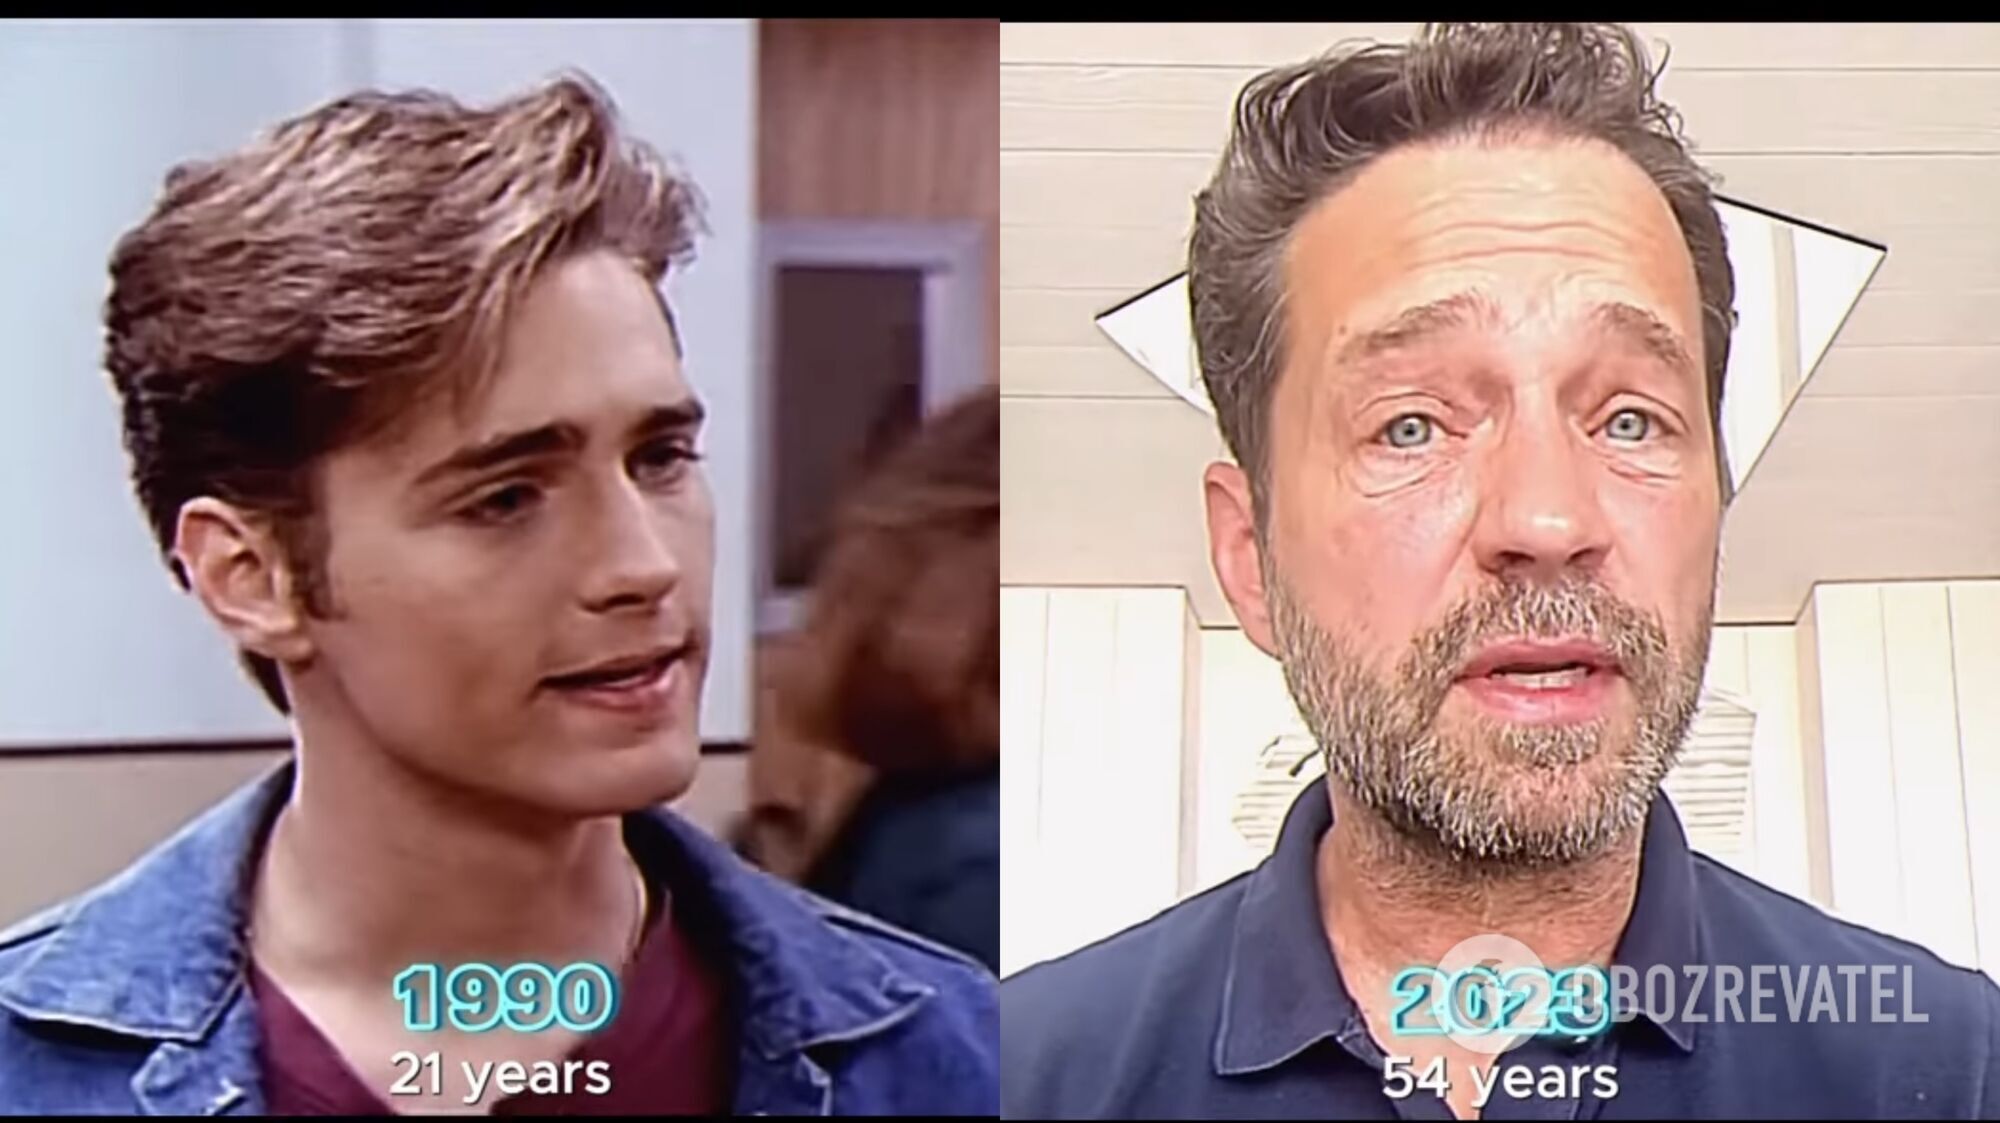 "Кучерявий у свої 60 виглядає ідеально": як постаріли актори з культового серіалу "Беверлі-Хіллз, 90210" 